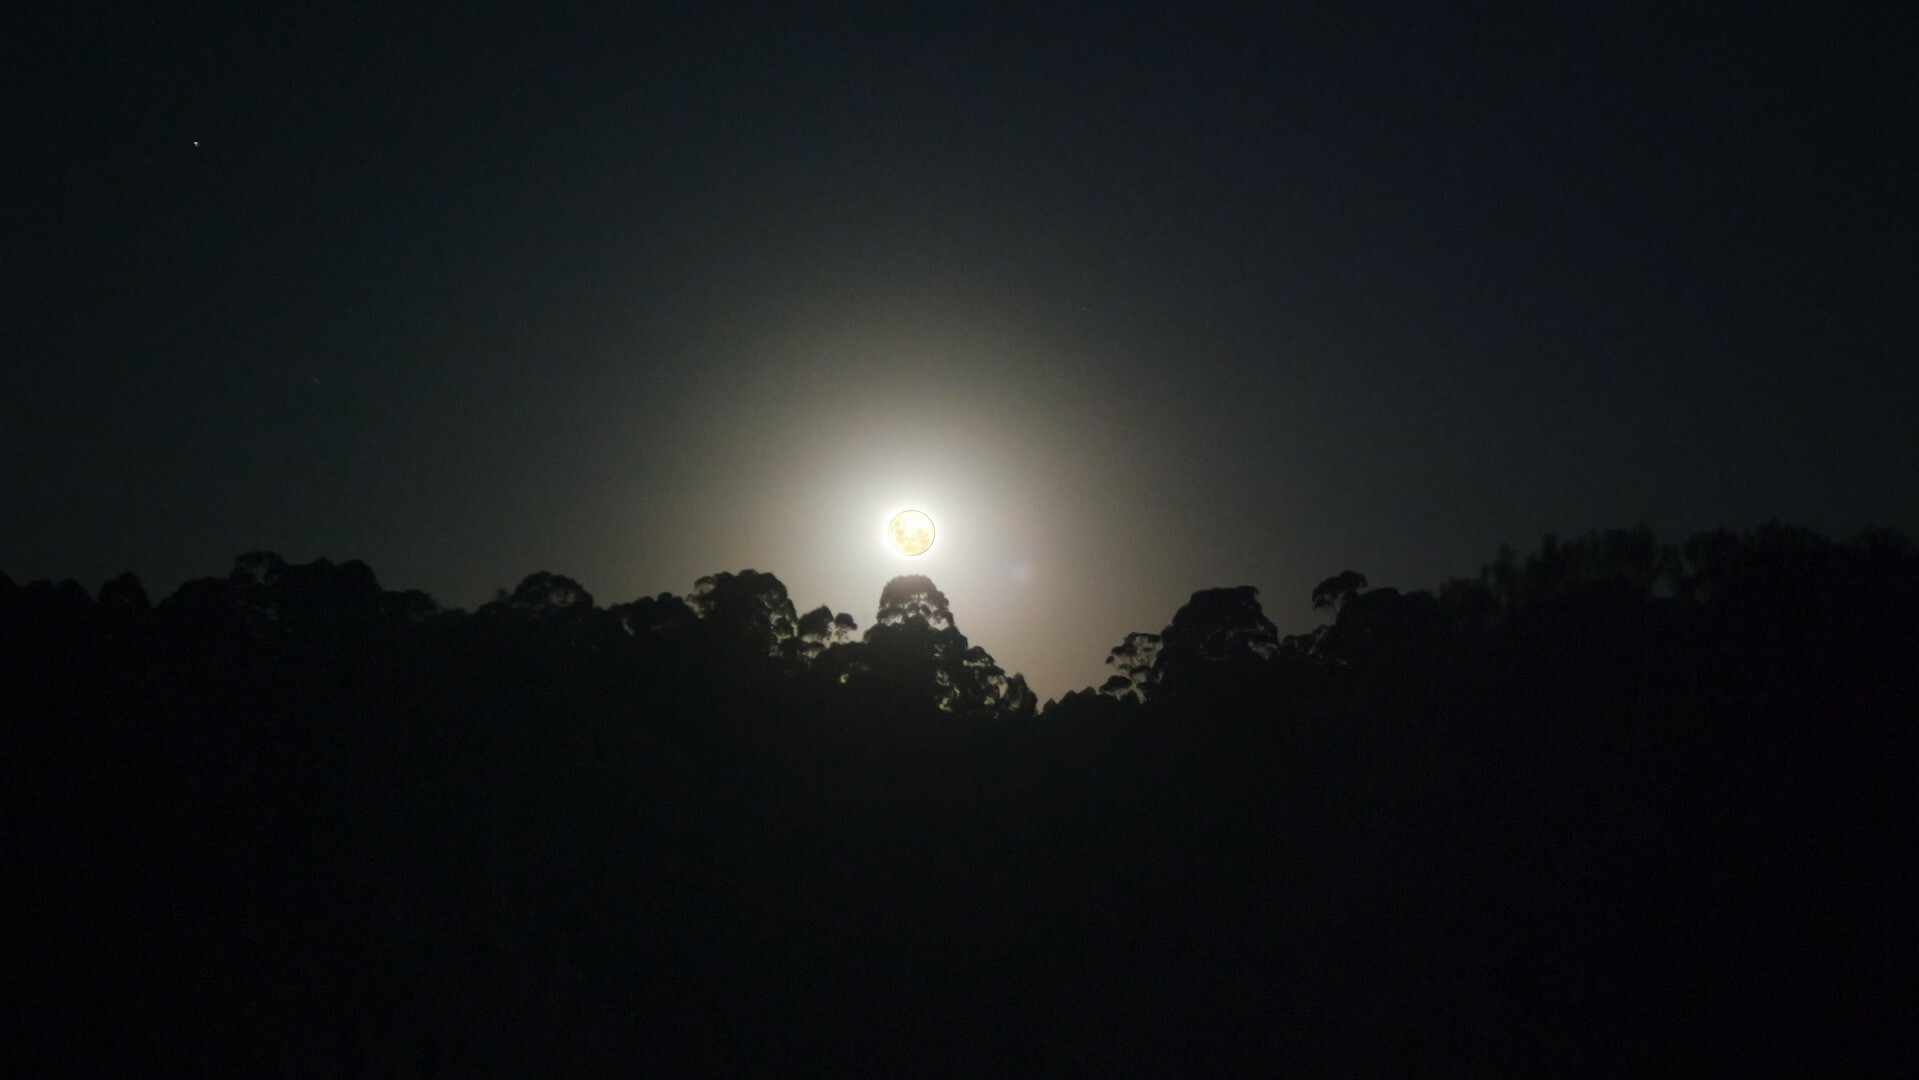 La imagen casi original de la imagen altamente modificado por el programa GIMP.</p><p>Se ve el horizonte de arboles de eucalipto de la cierra de la tierra de nuestros nietos con la luna en su tamaño real. Las copas de los arboles parecen recortados con claridad contra el horizonte iluminado por la luna con un cierto resplandor blanquecino. La mitad inferior de la imagen es negro escuro no mas mientras que todo el cielo visible desvanece hacia grises oscuros hacia los bordes de la parte superior de la imagen.</p><p>La propia luna de color cremoso de la imagen inicial de esta publicación fue recortada e insertada en el lugar original y del tamaño original de la luna en esta imagen para que se pueda apreciar su color cremoso visible real en su momento a la textura de la propia luna por sus valles y cráteres.